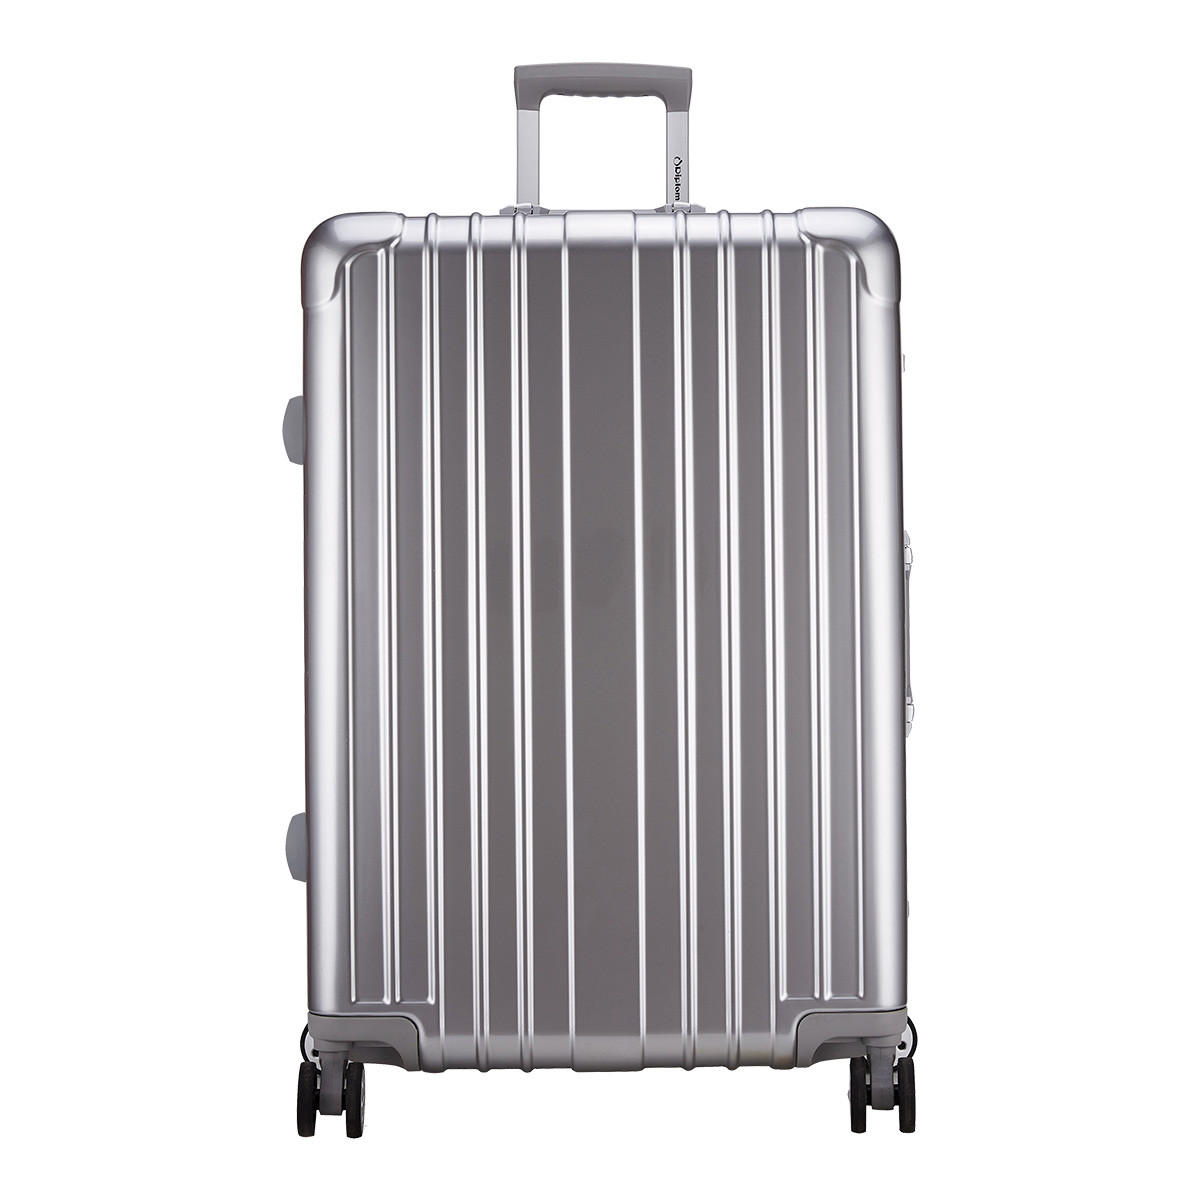 铝框拉杆箱_行李箱 铝框拉杆箱 20寸铝合金 厂家专业生产定制 - 阿里巴巴